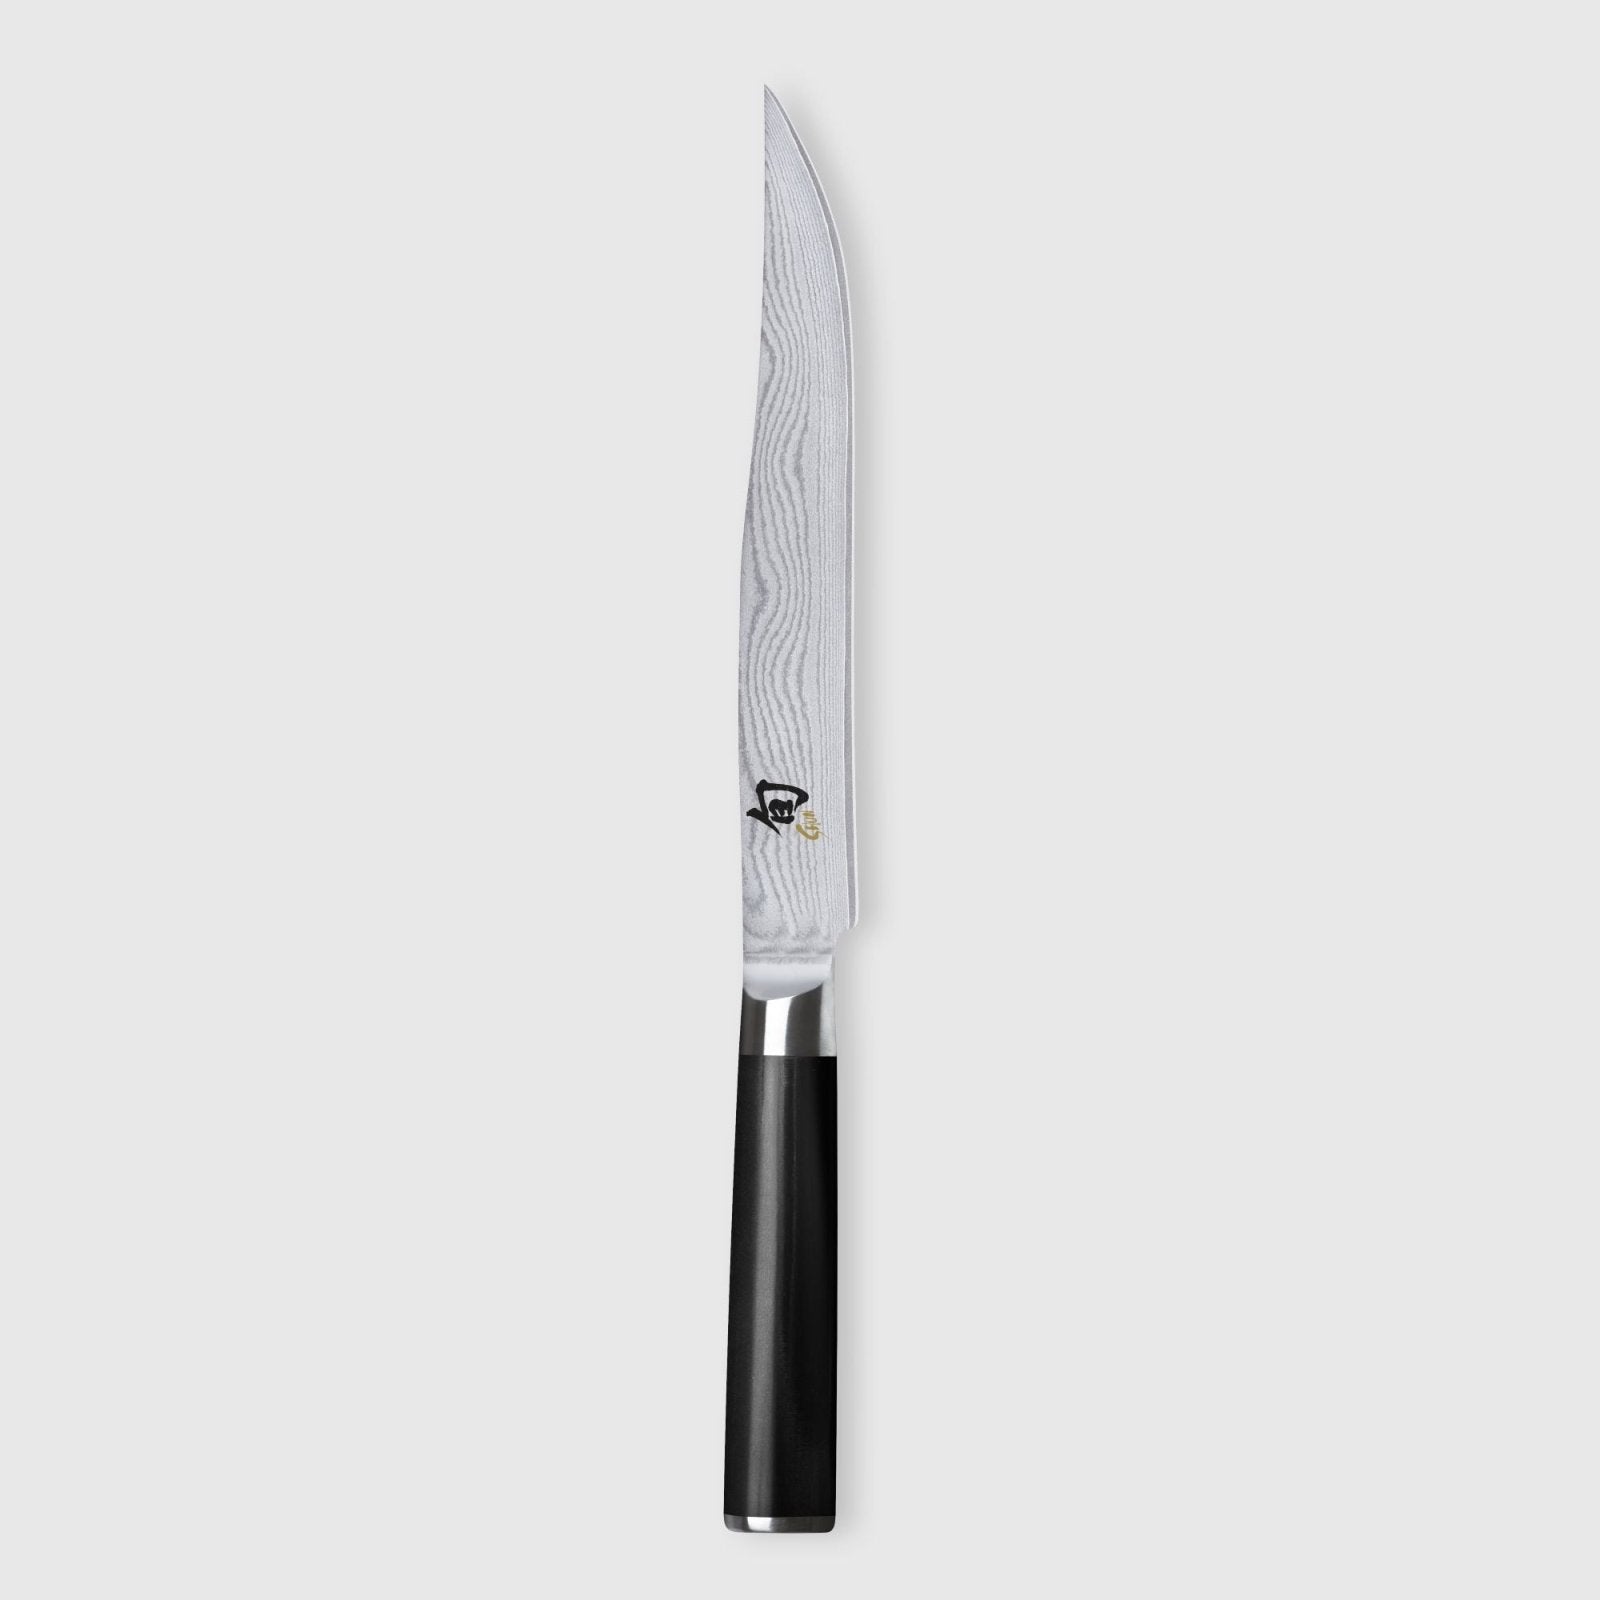 KAI Shun 20cm Carving Knife - KAI-DM-0703 - The Cotswold Knife Company